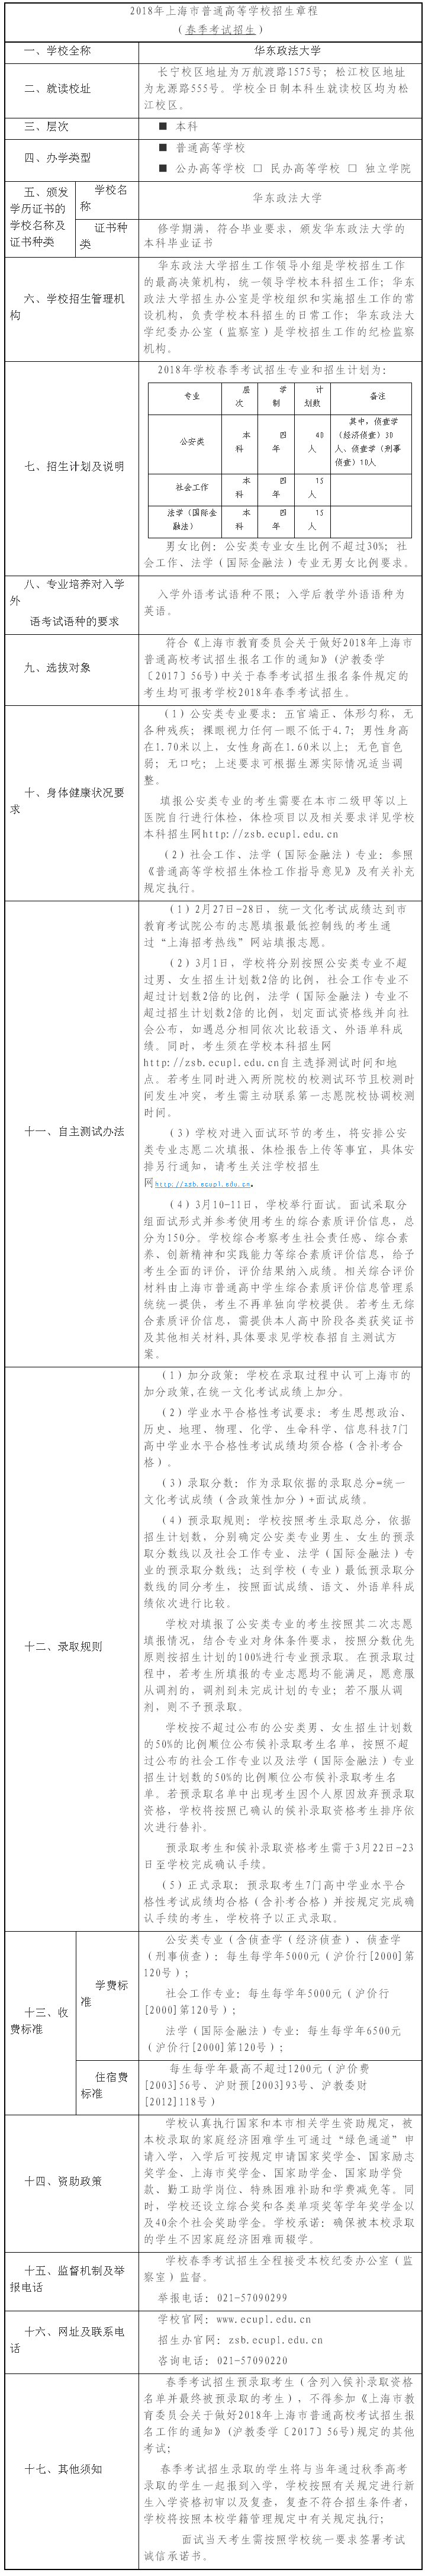 华东政法大学2018年春季考试招生章程1